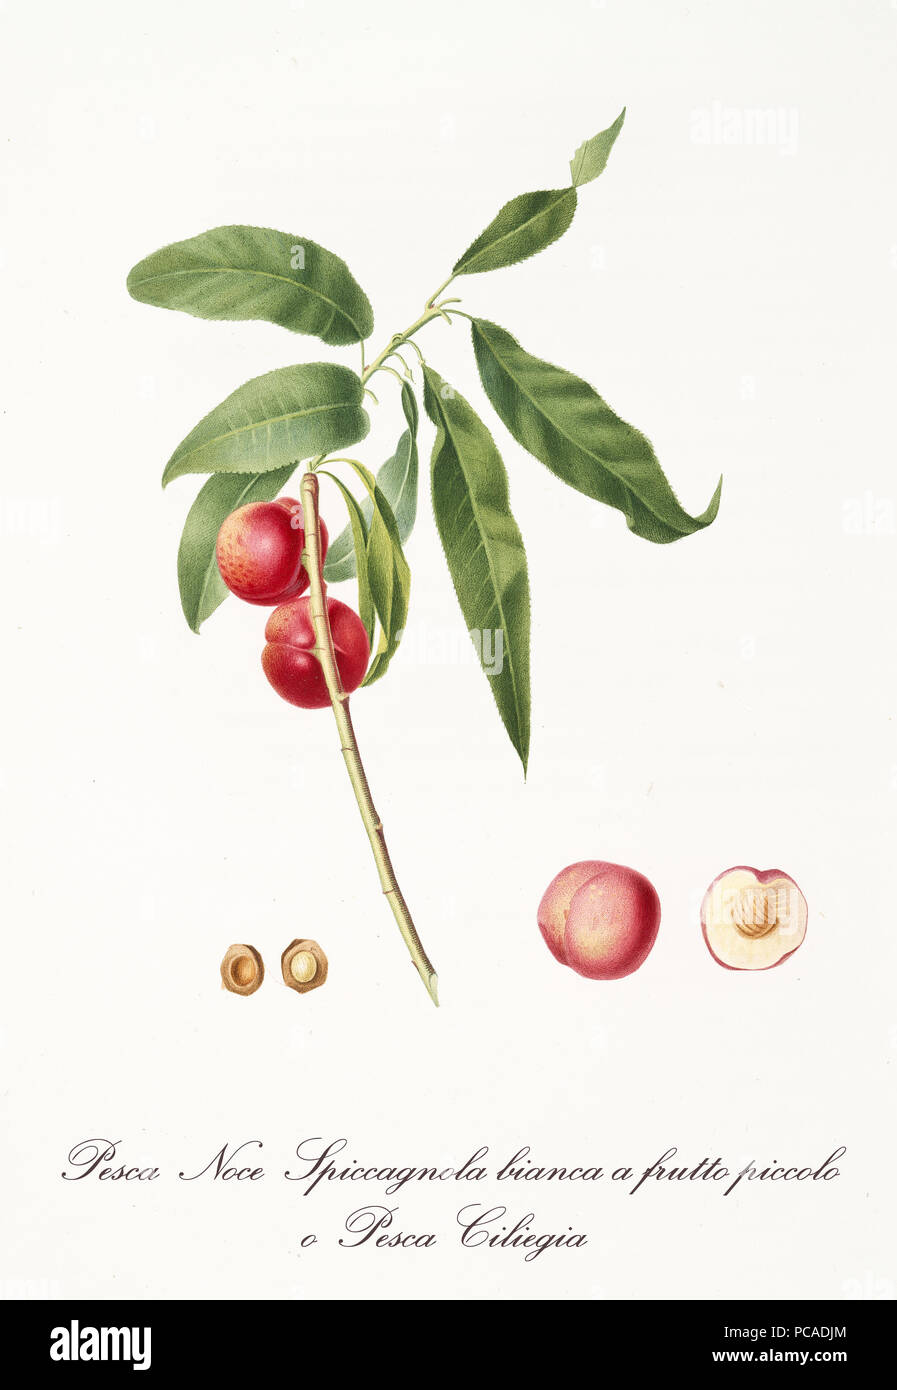 Deux petites pêches rouge lisse arrondie sur une seule branche et fruits isolés section et noyau. Ancien jardin botanique illustration détaillée de Giorgio Gallesio sur 1817, 1839 Banque D'Images